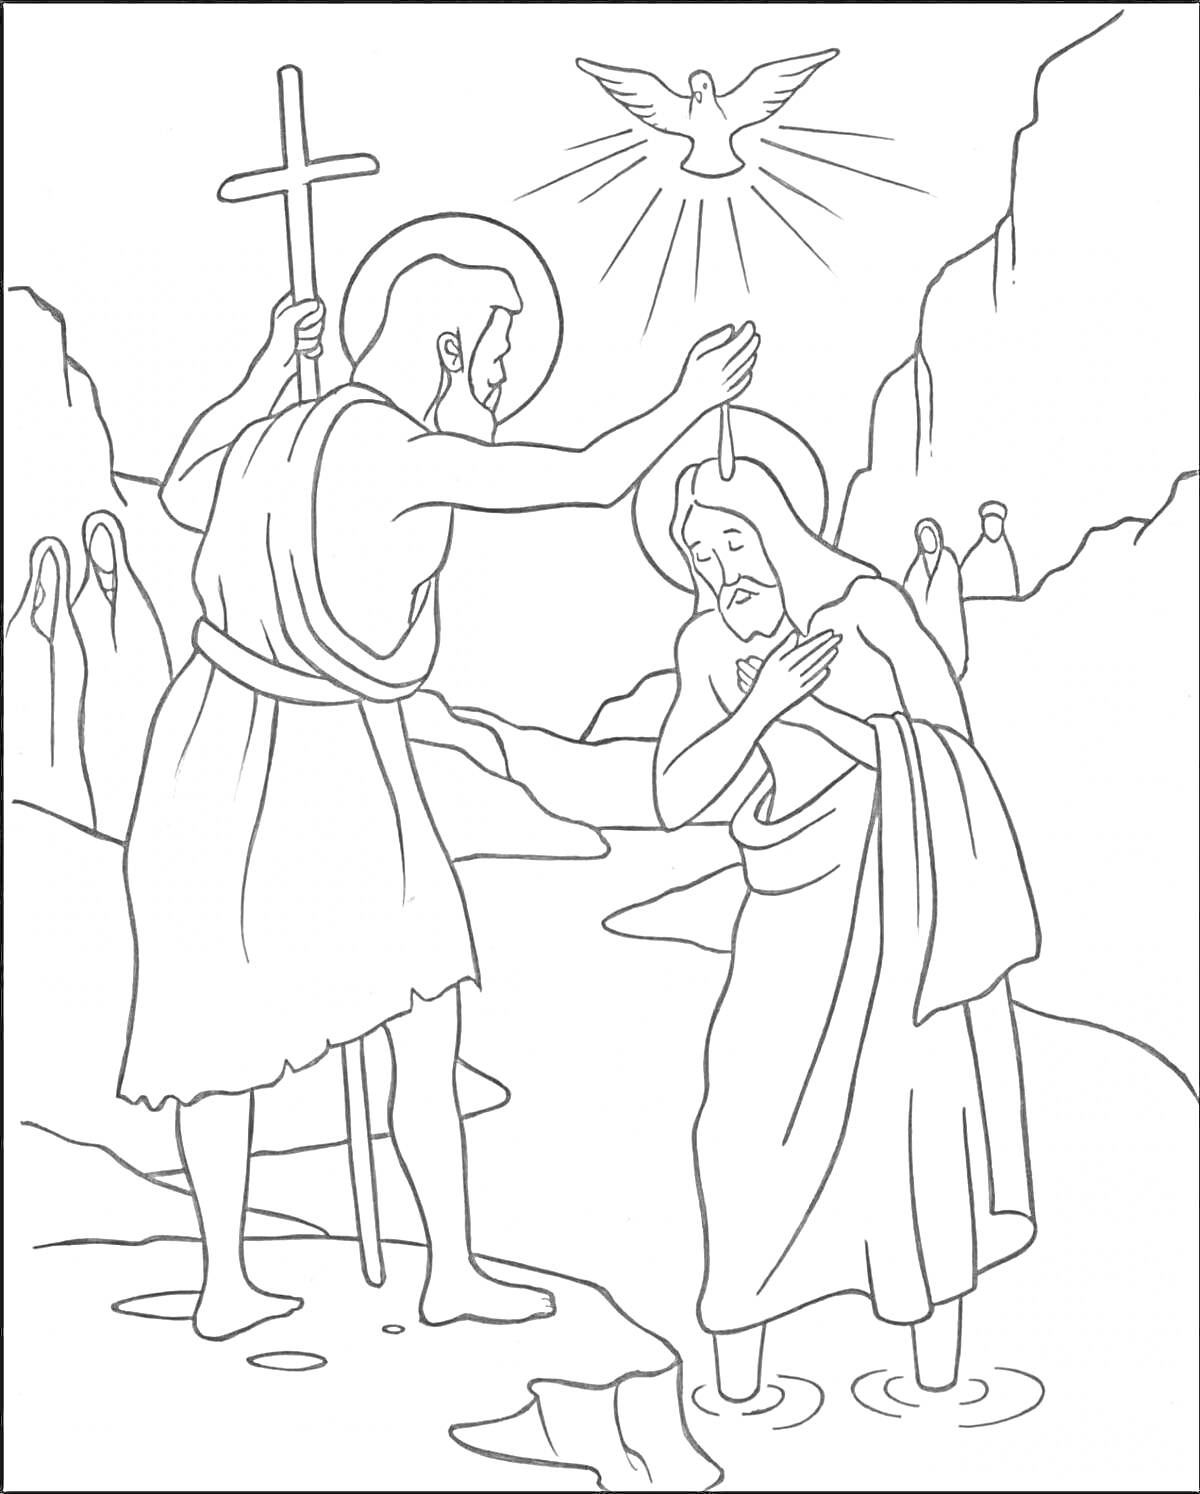 Крещение Господне: Основная сцена крещения, два человека в реке, один с крестом, на фоне пять человек, сверху голубь с нимбом